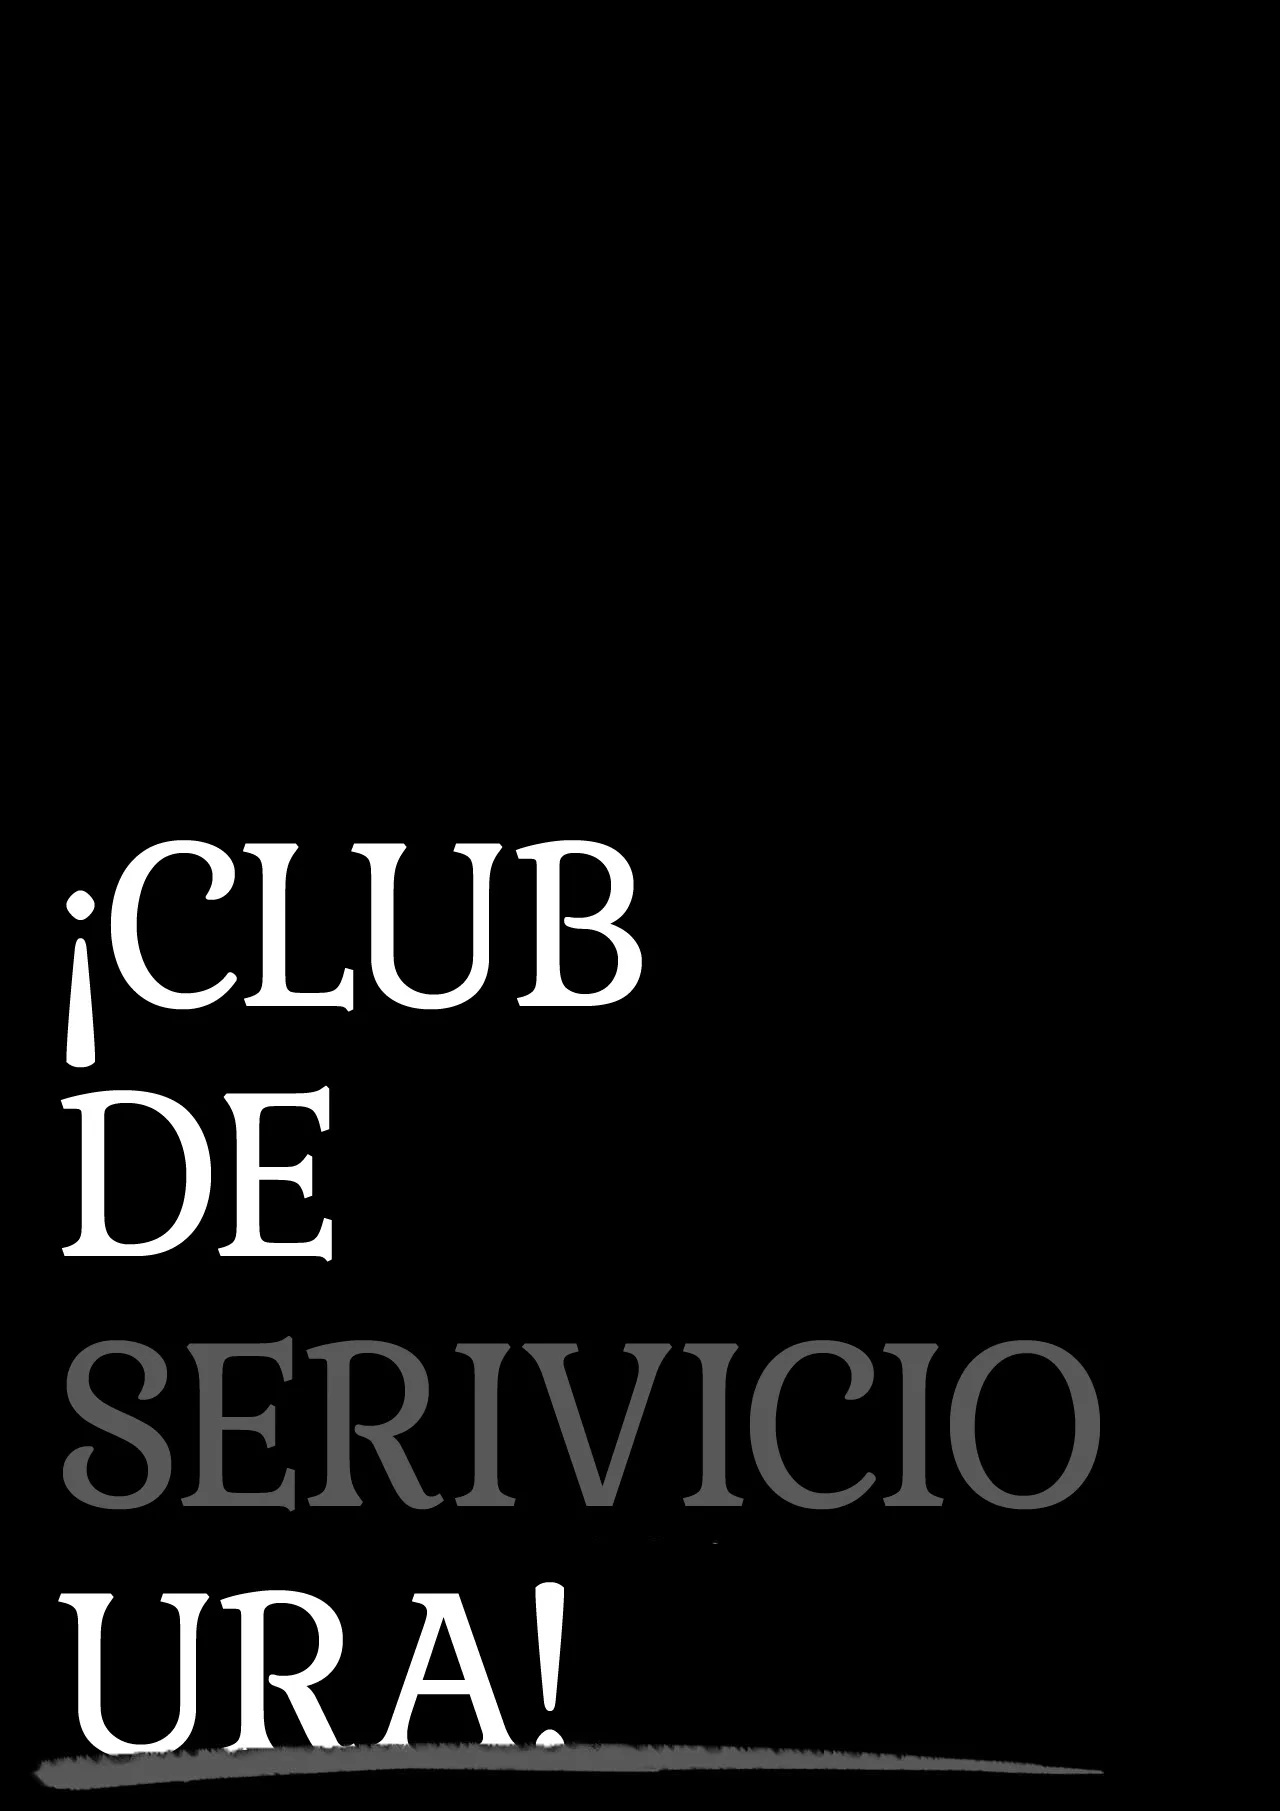 CLUB DE SERVICIO URA - 1